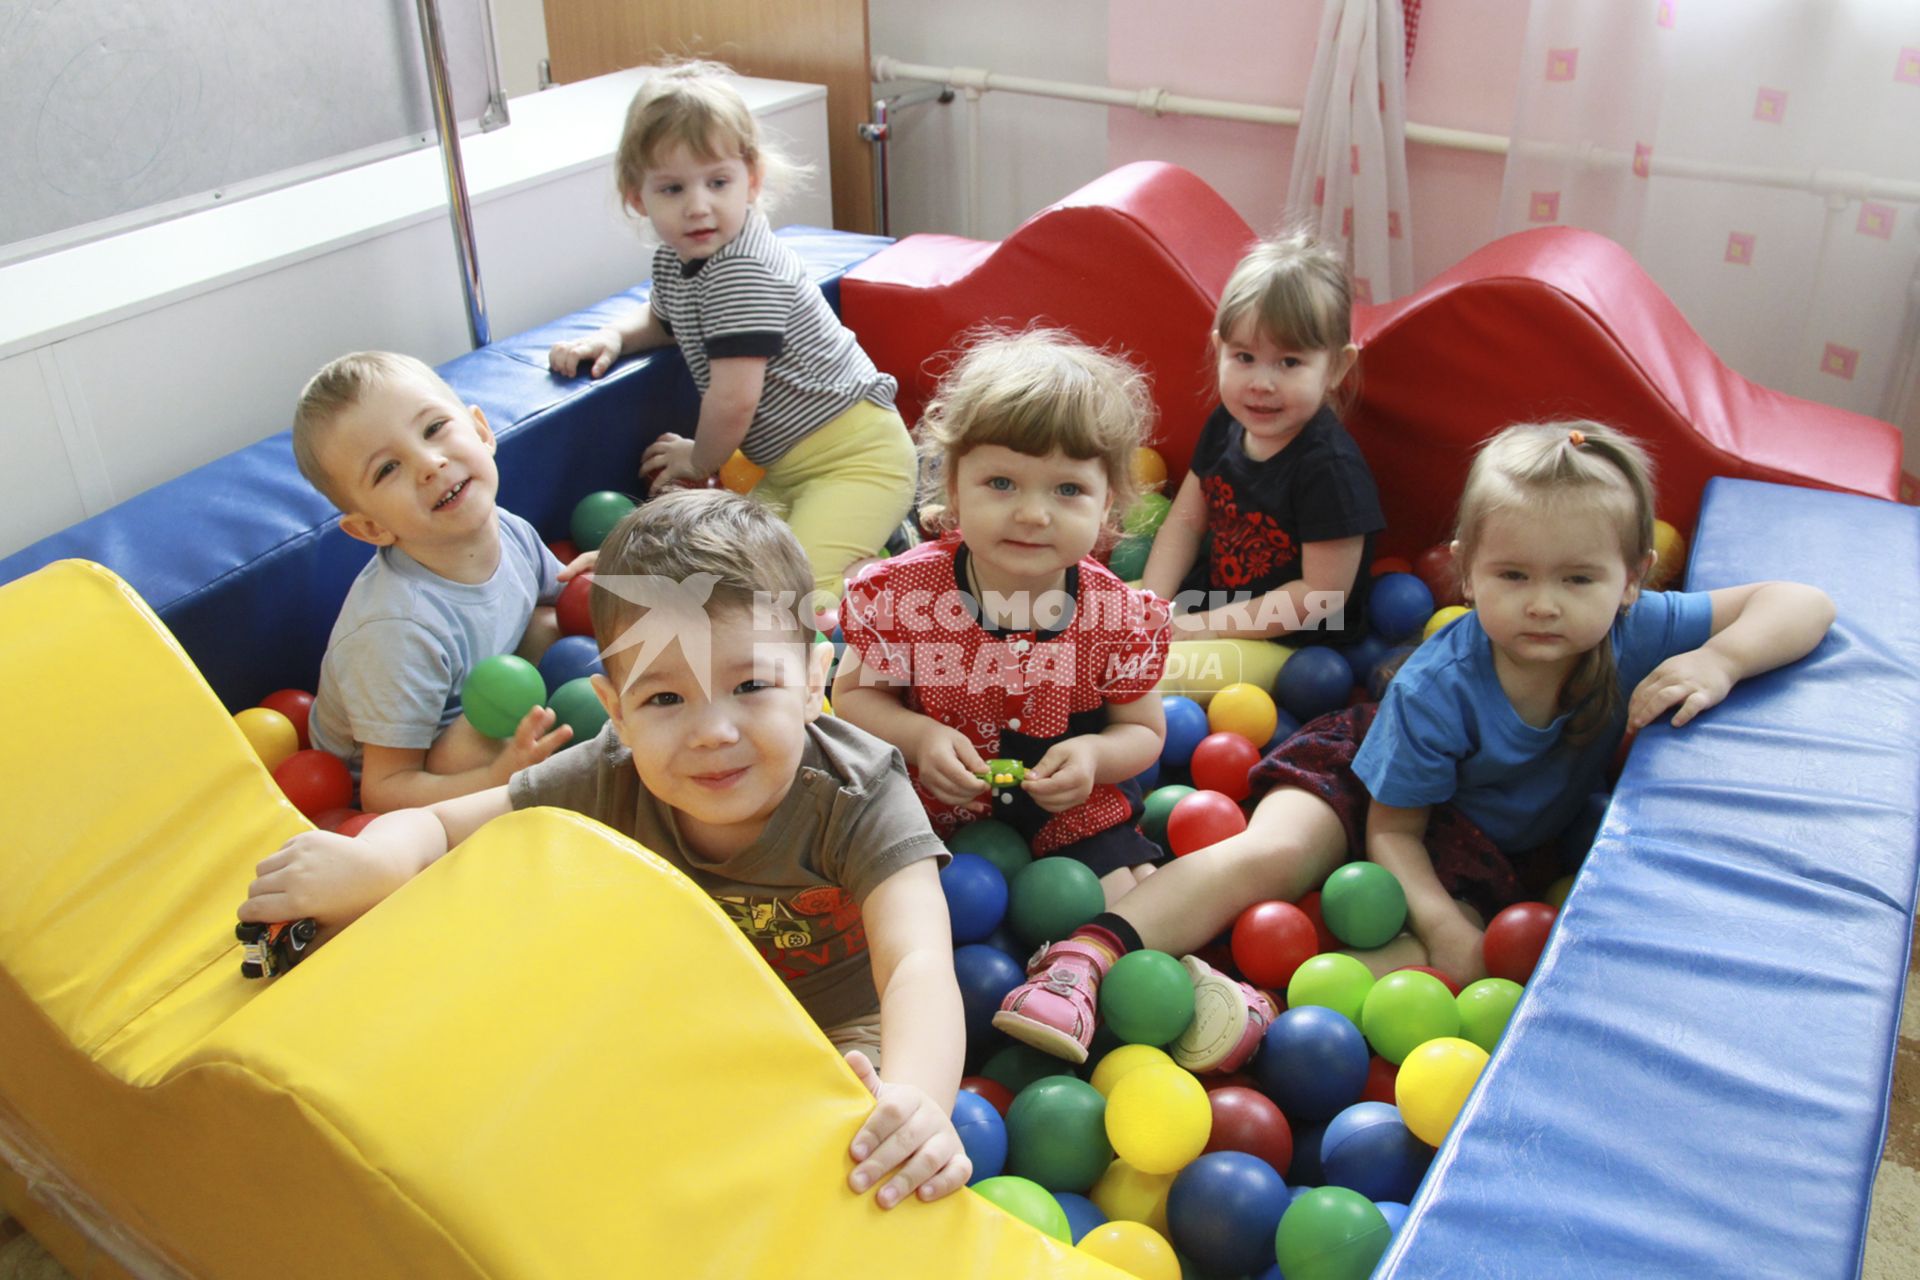 Барнаул. Дети среди игрушек в детском саду.